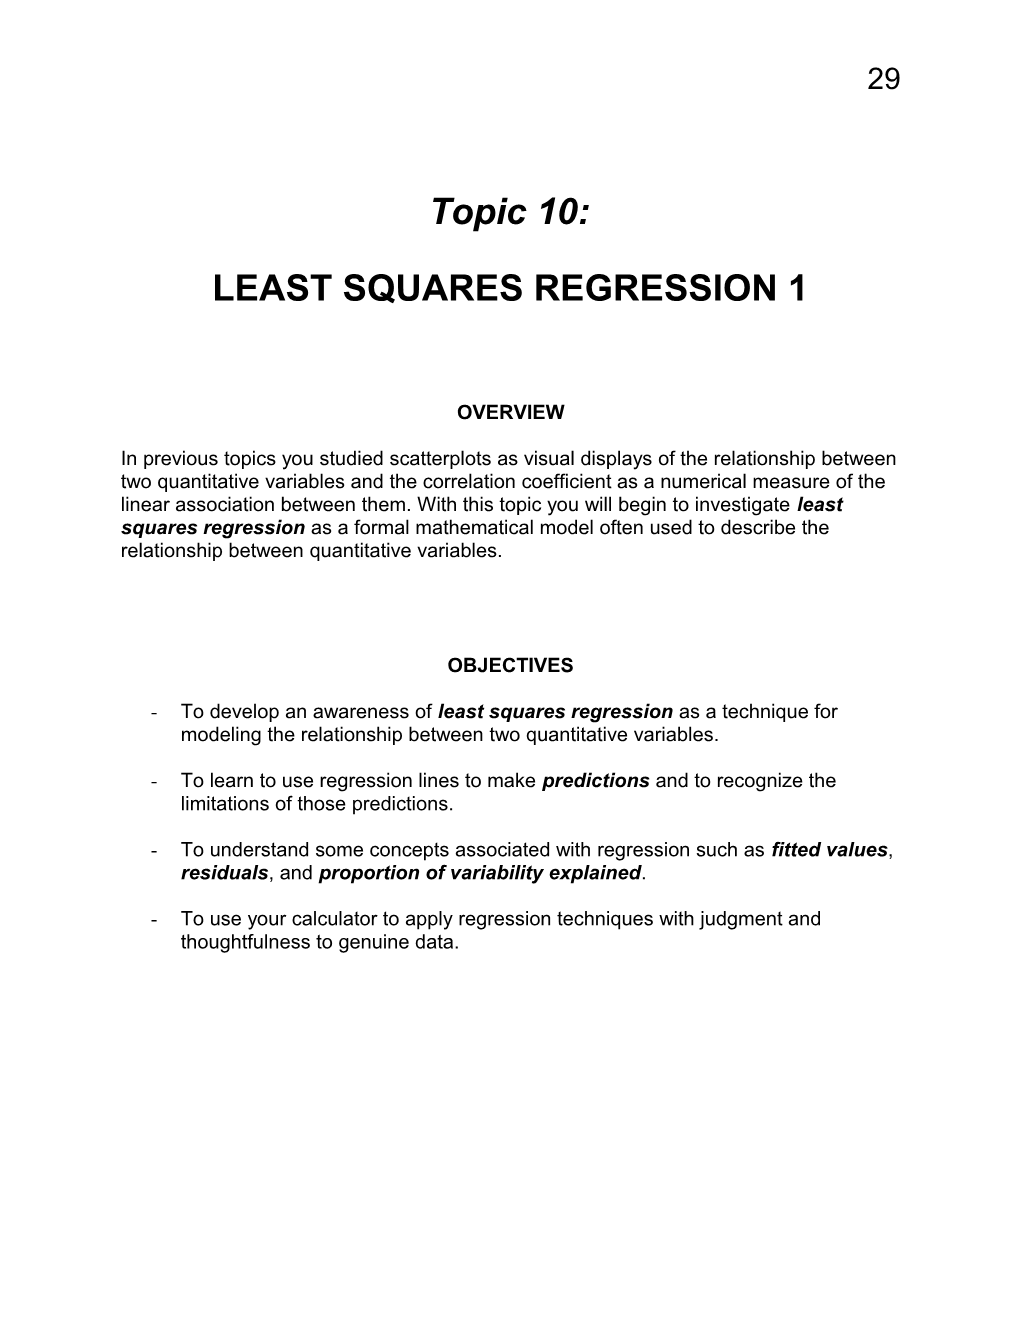 Least Squares Regression 1